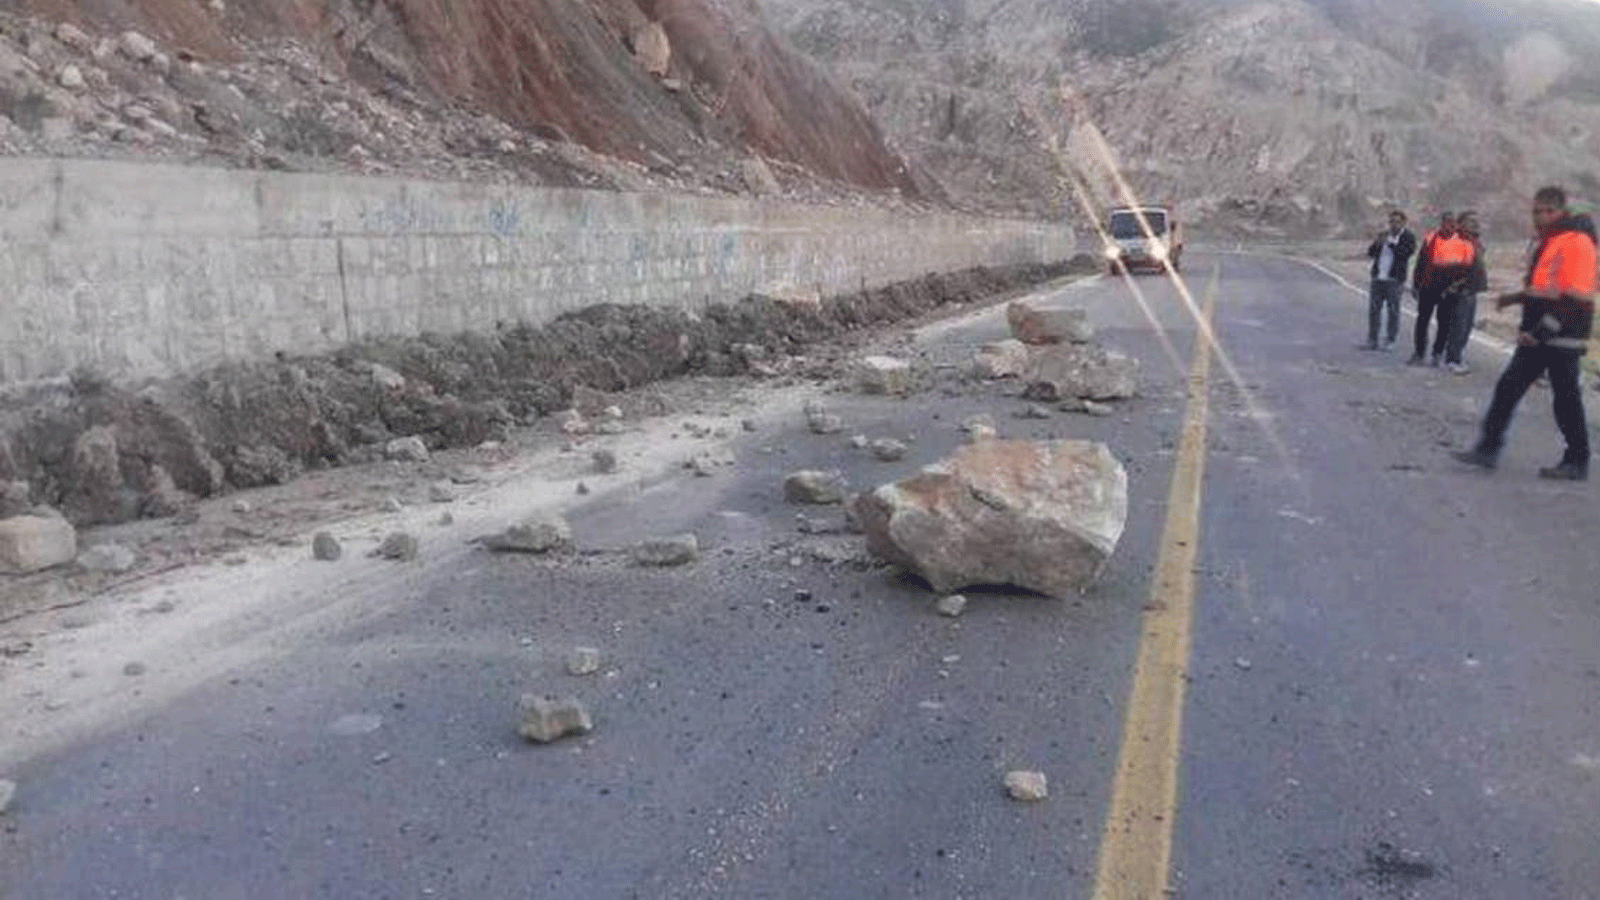 صورة تُظهِر إغلاق طريق الأهرام - فراش باند بسبب الانهيار الأرضي الناجم عن زلزال ضرب محافظة بوشهر جنوب إيران. تم التقاطها في 27 كانون الأول/ديسمبر 2019 